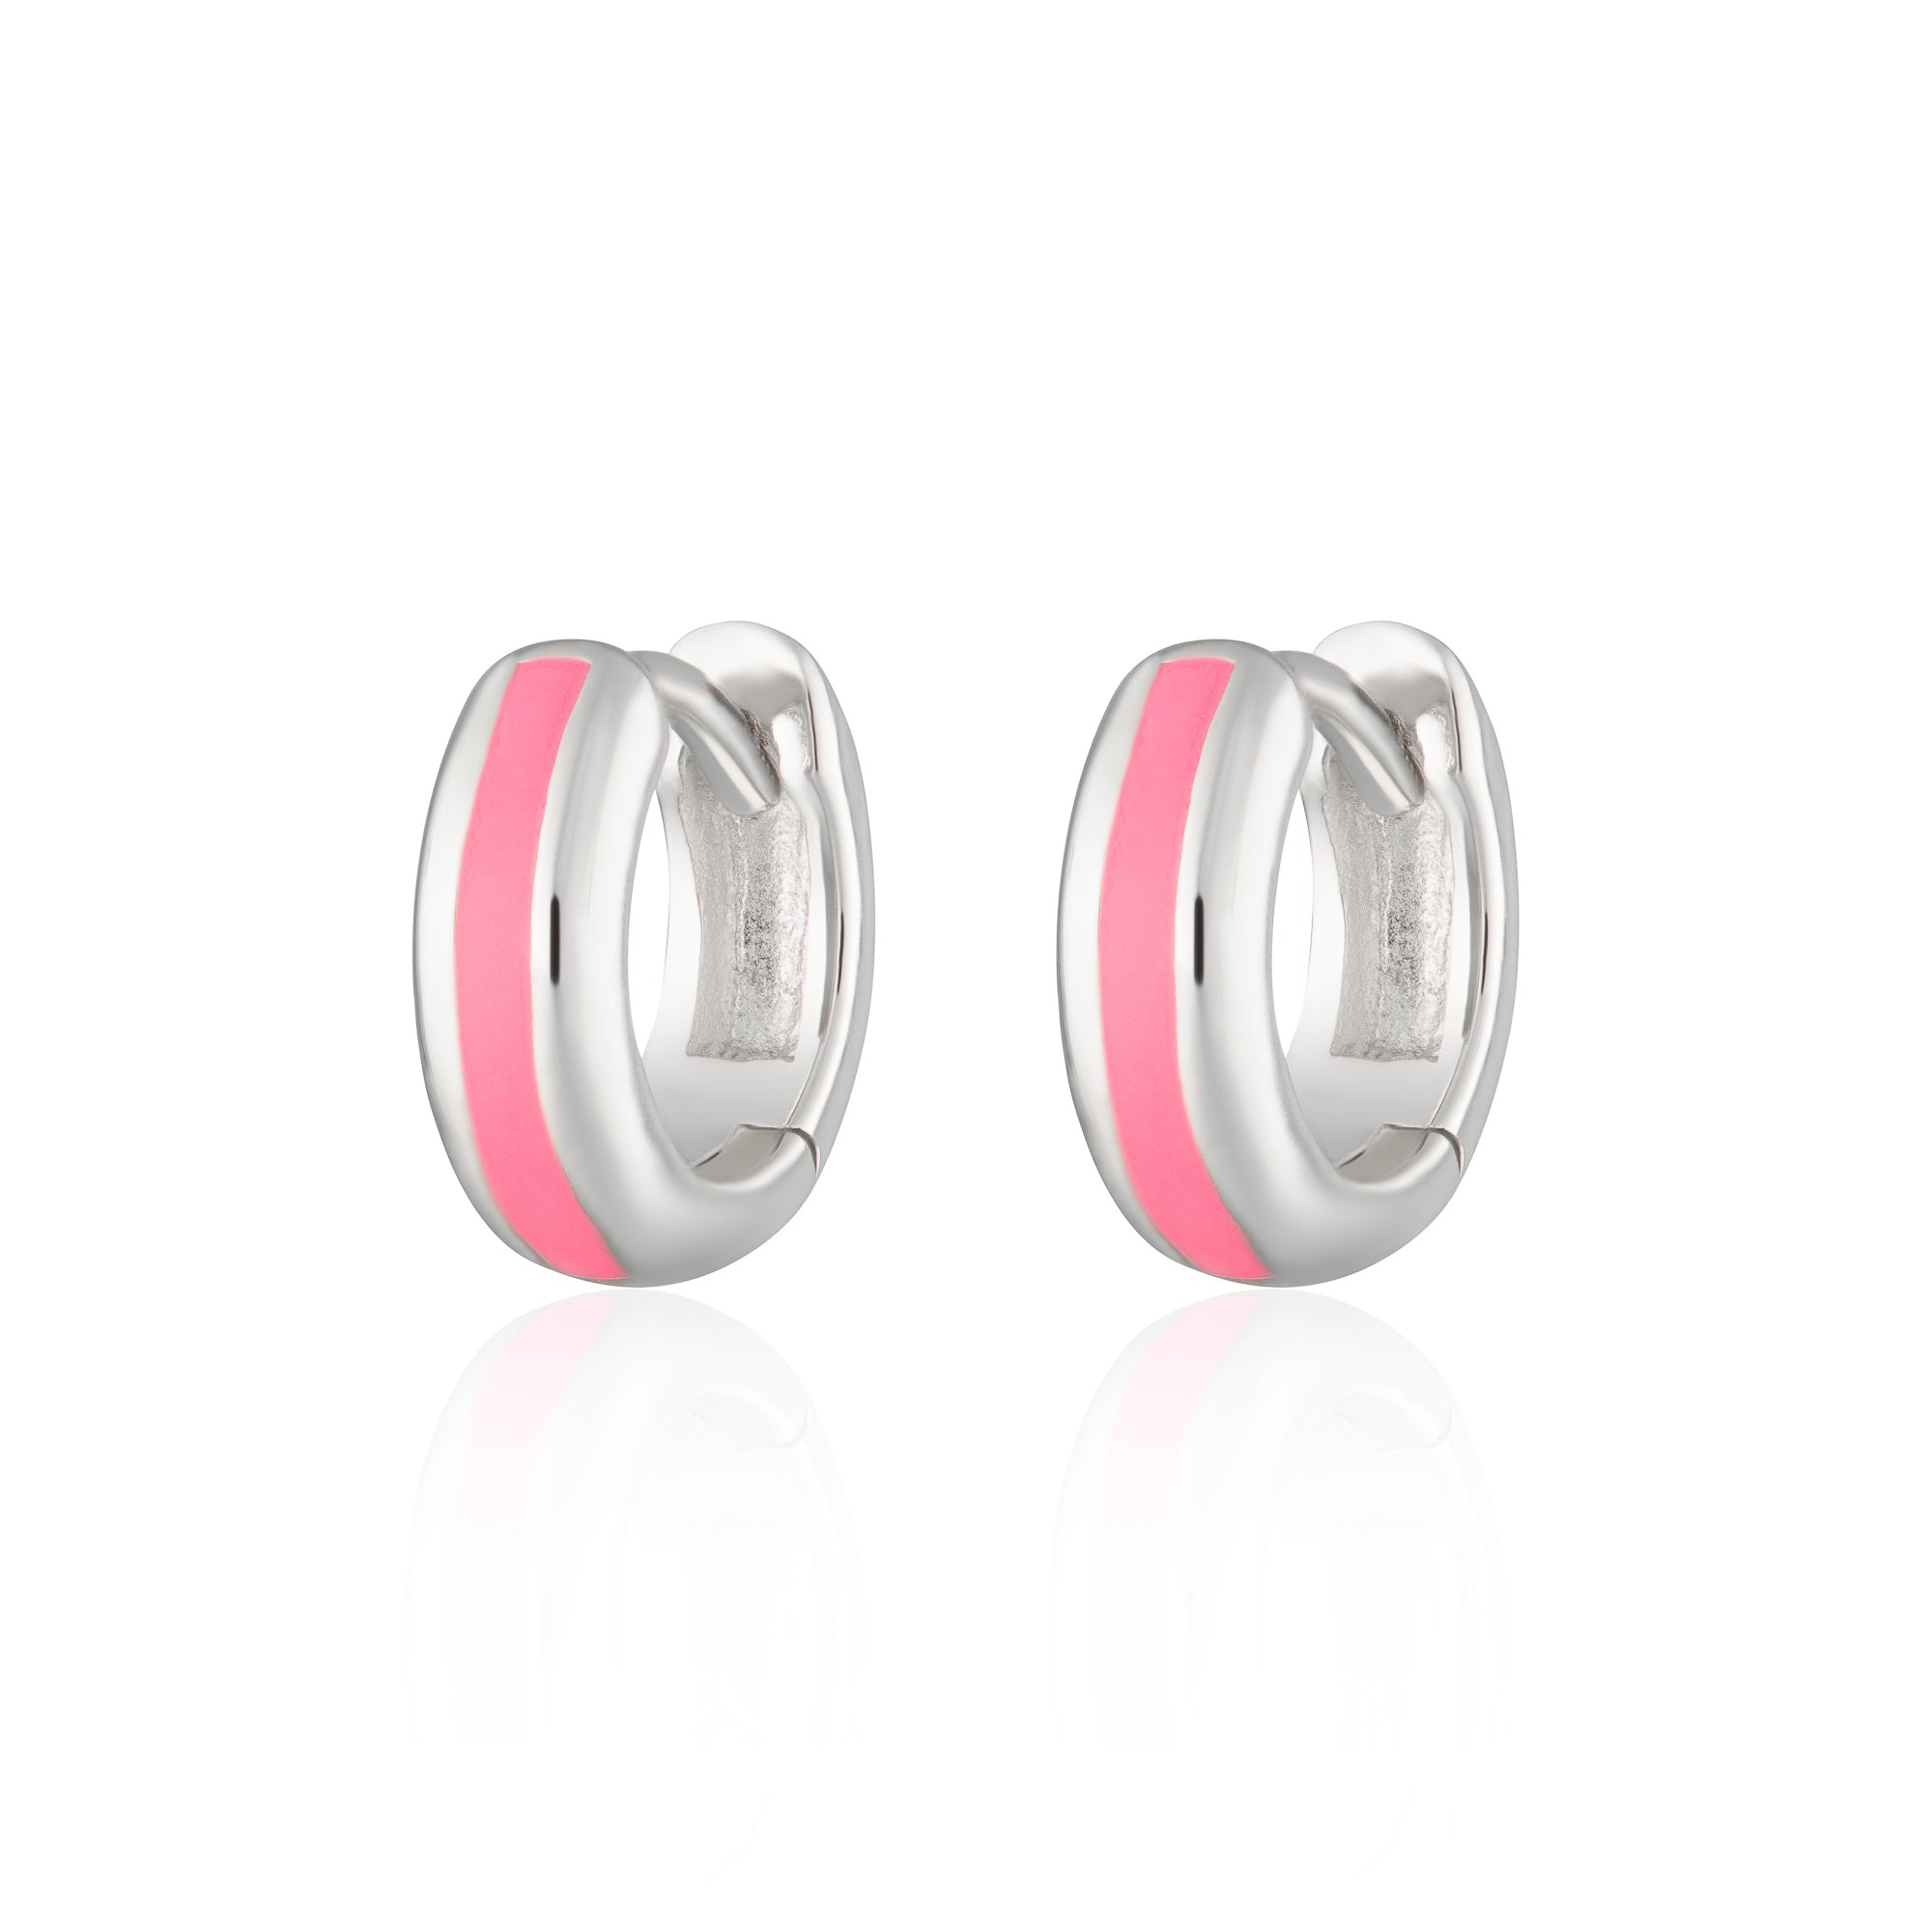 Candy Stripe Huggie Earrings in Neon Pink by Scream Pretty